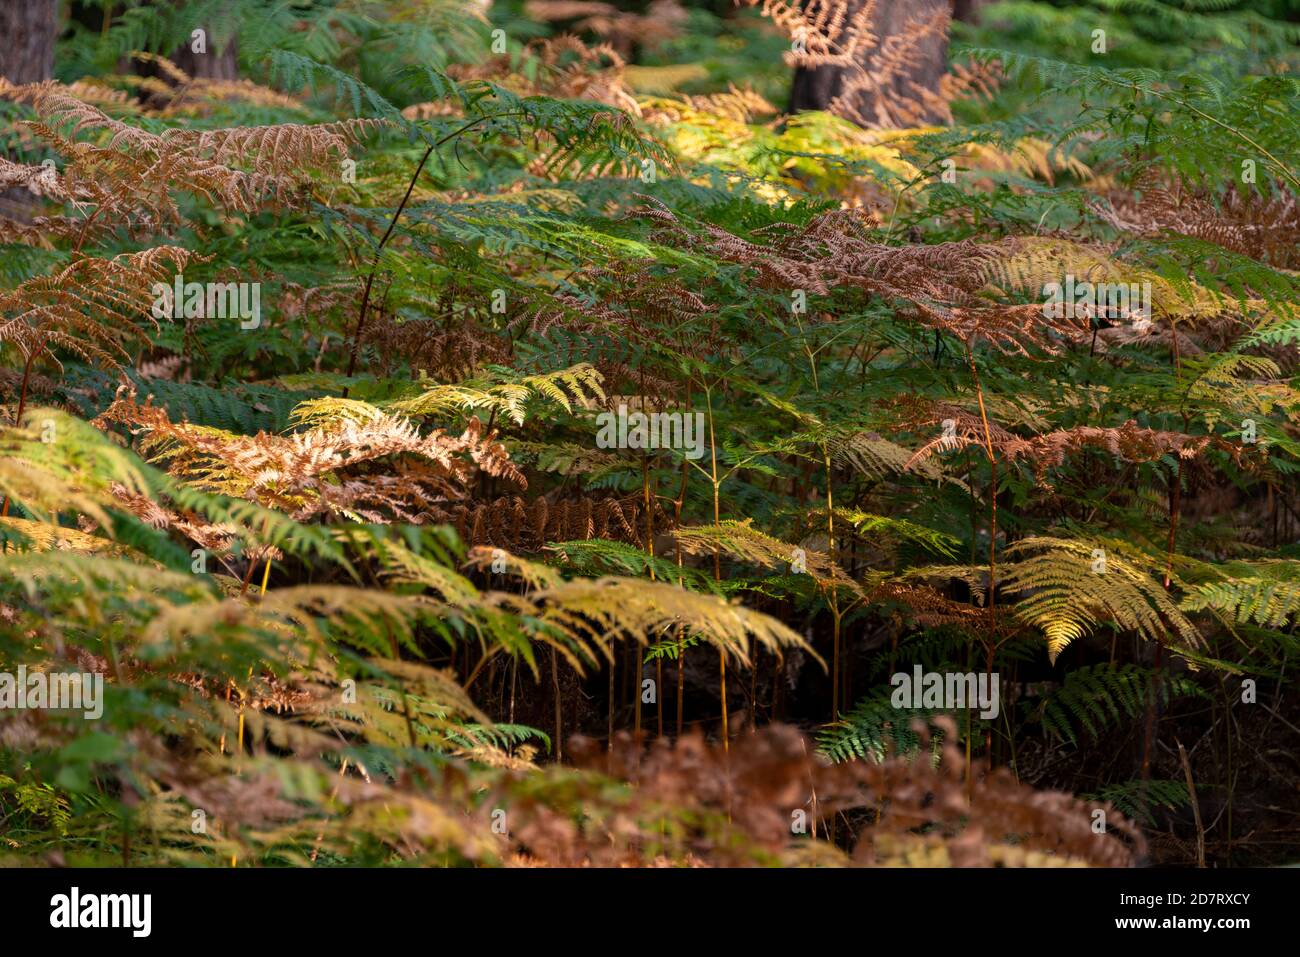 Herbstliche Impressionen aus Schleswig-Holstein im Oktober. Von der Herbstsonne beschienene Farne im Wald Stock Photo